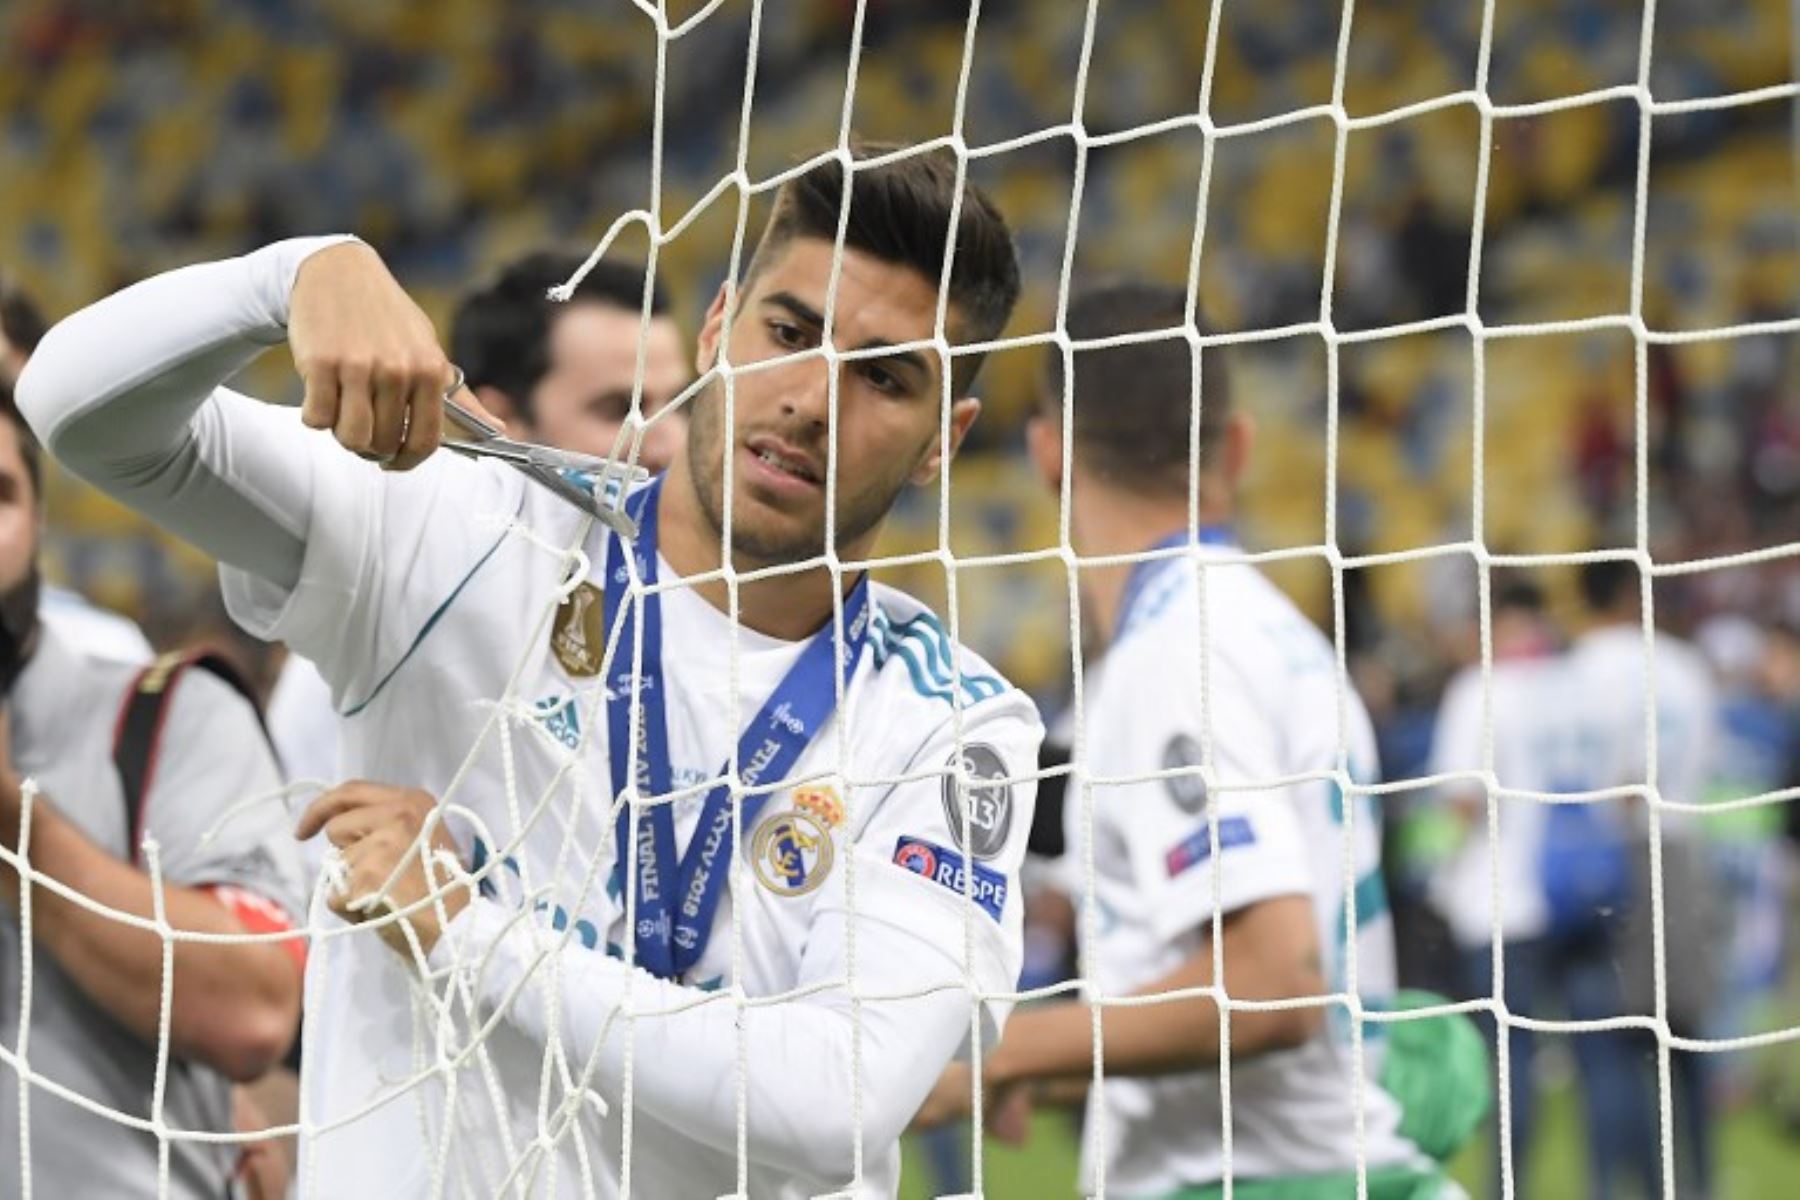 El centrocampista español del Real Madrid Marco Asensio recorta la portería después de ganar el partido de fútbol final de la UEFA